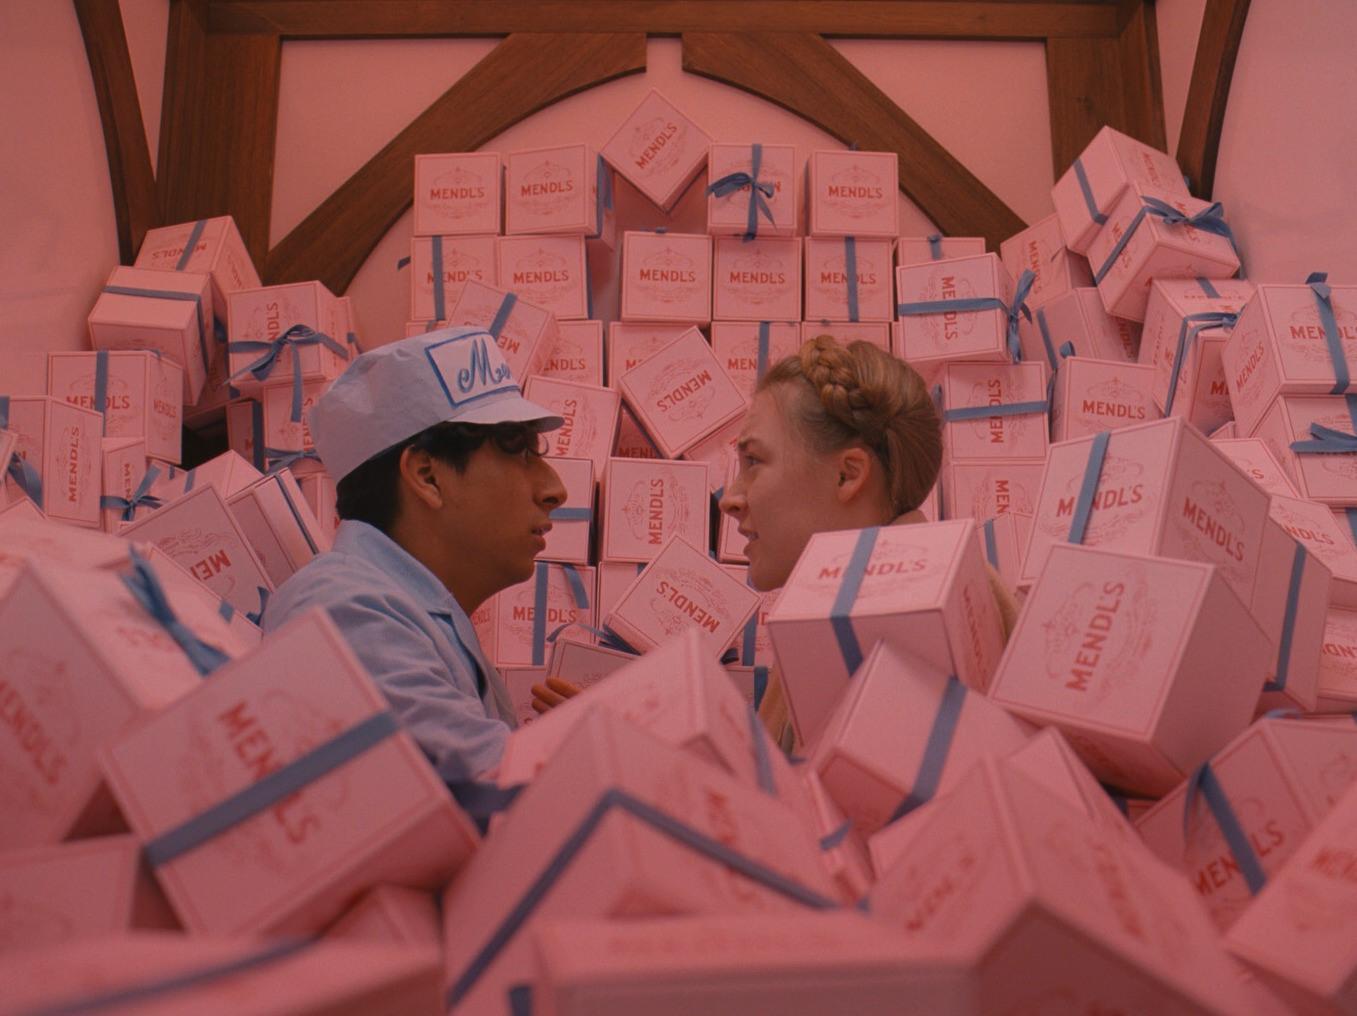 Los colores pastel son propios del cine de Wes Anderson. Aquí, un fotograma de 'El Gran Hotel Budapest"